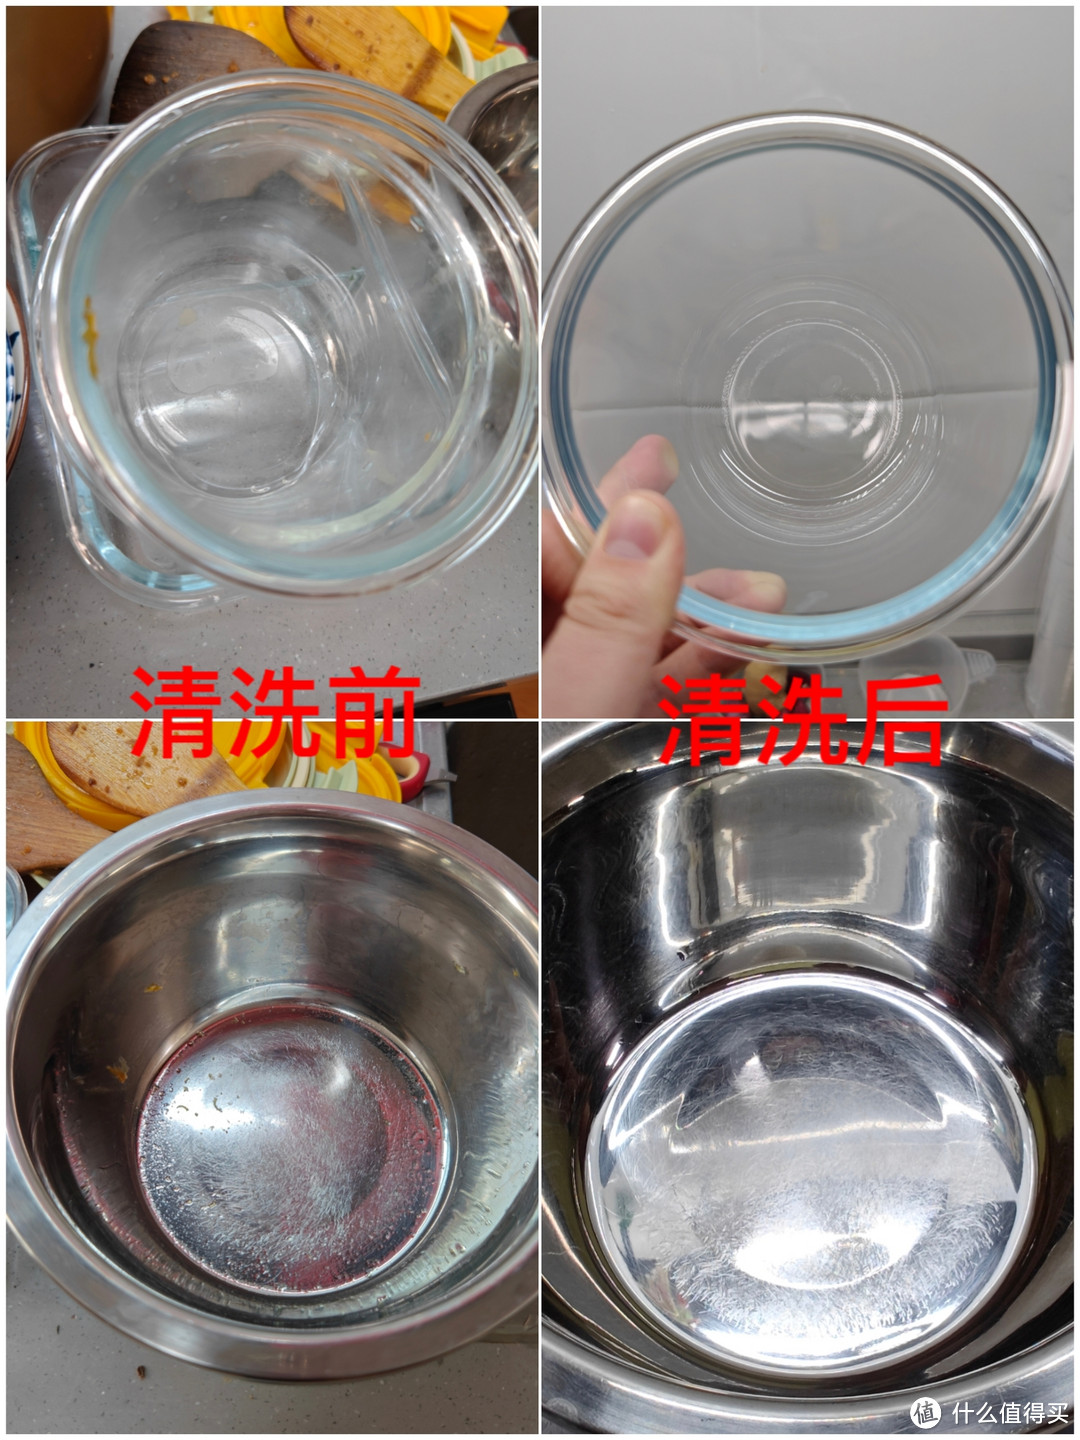 ▲玻璃碗、不锈钢盆清洗前后对比